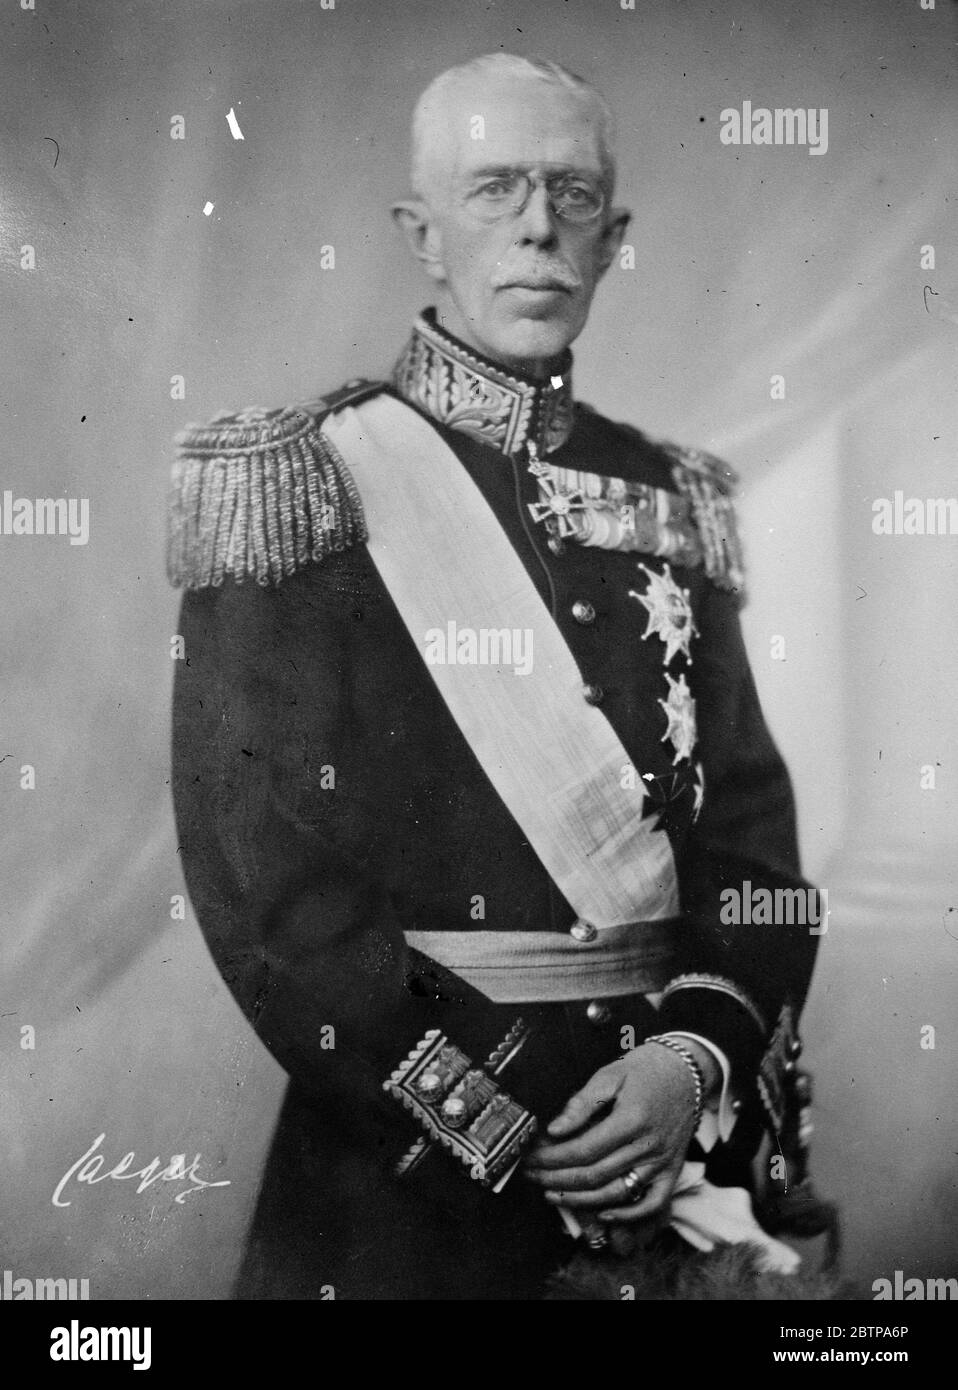 Königliche septuagenarian . Der König von Schweden, der siebzig am 16. Juni sein wird. Das offizielle Geburtstagsporträt . 15 Juni 1928 Stockfoto